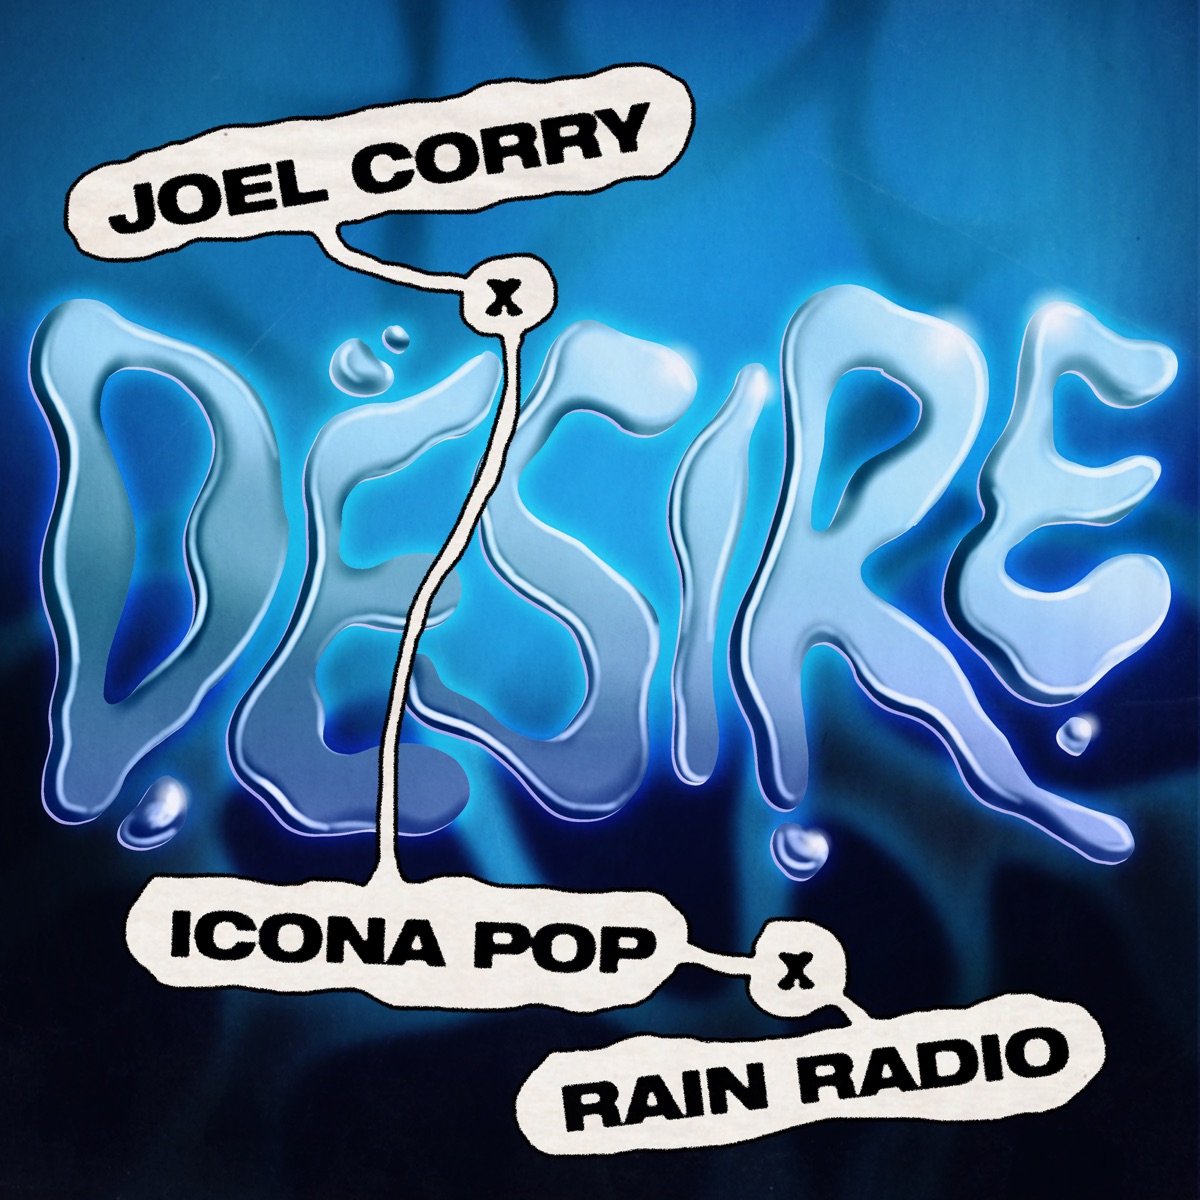 Joel Corry, Icona Pop, & Rain Radio Desire cover artwork